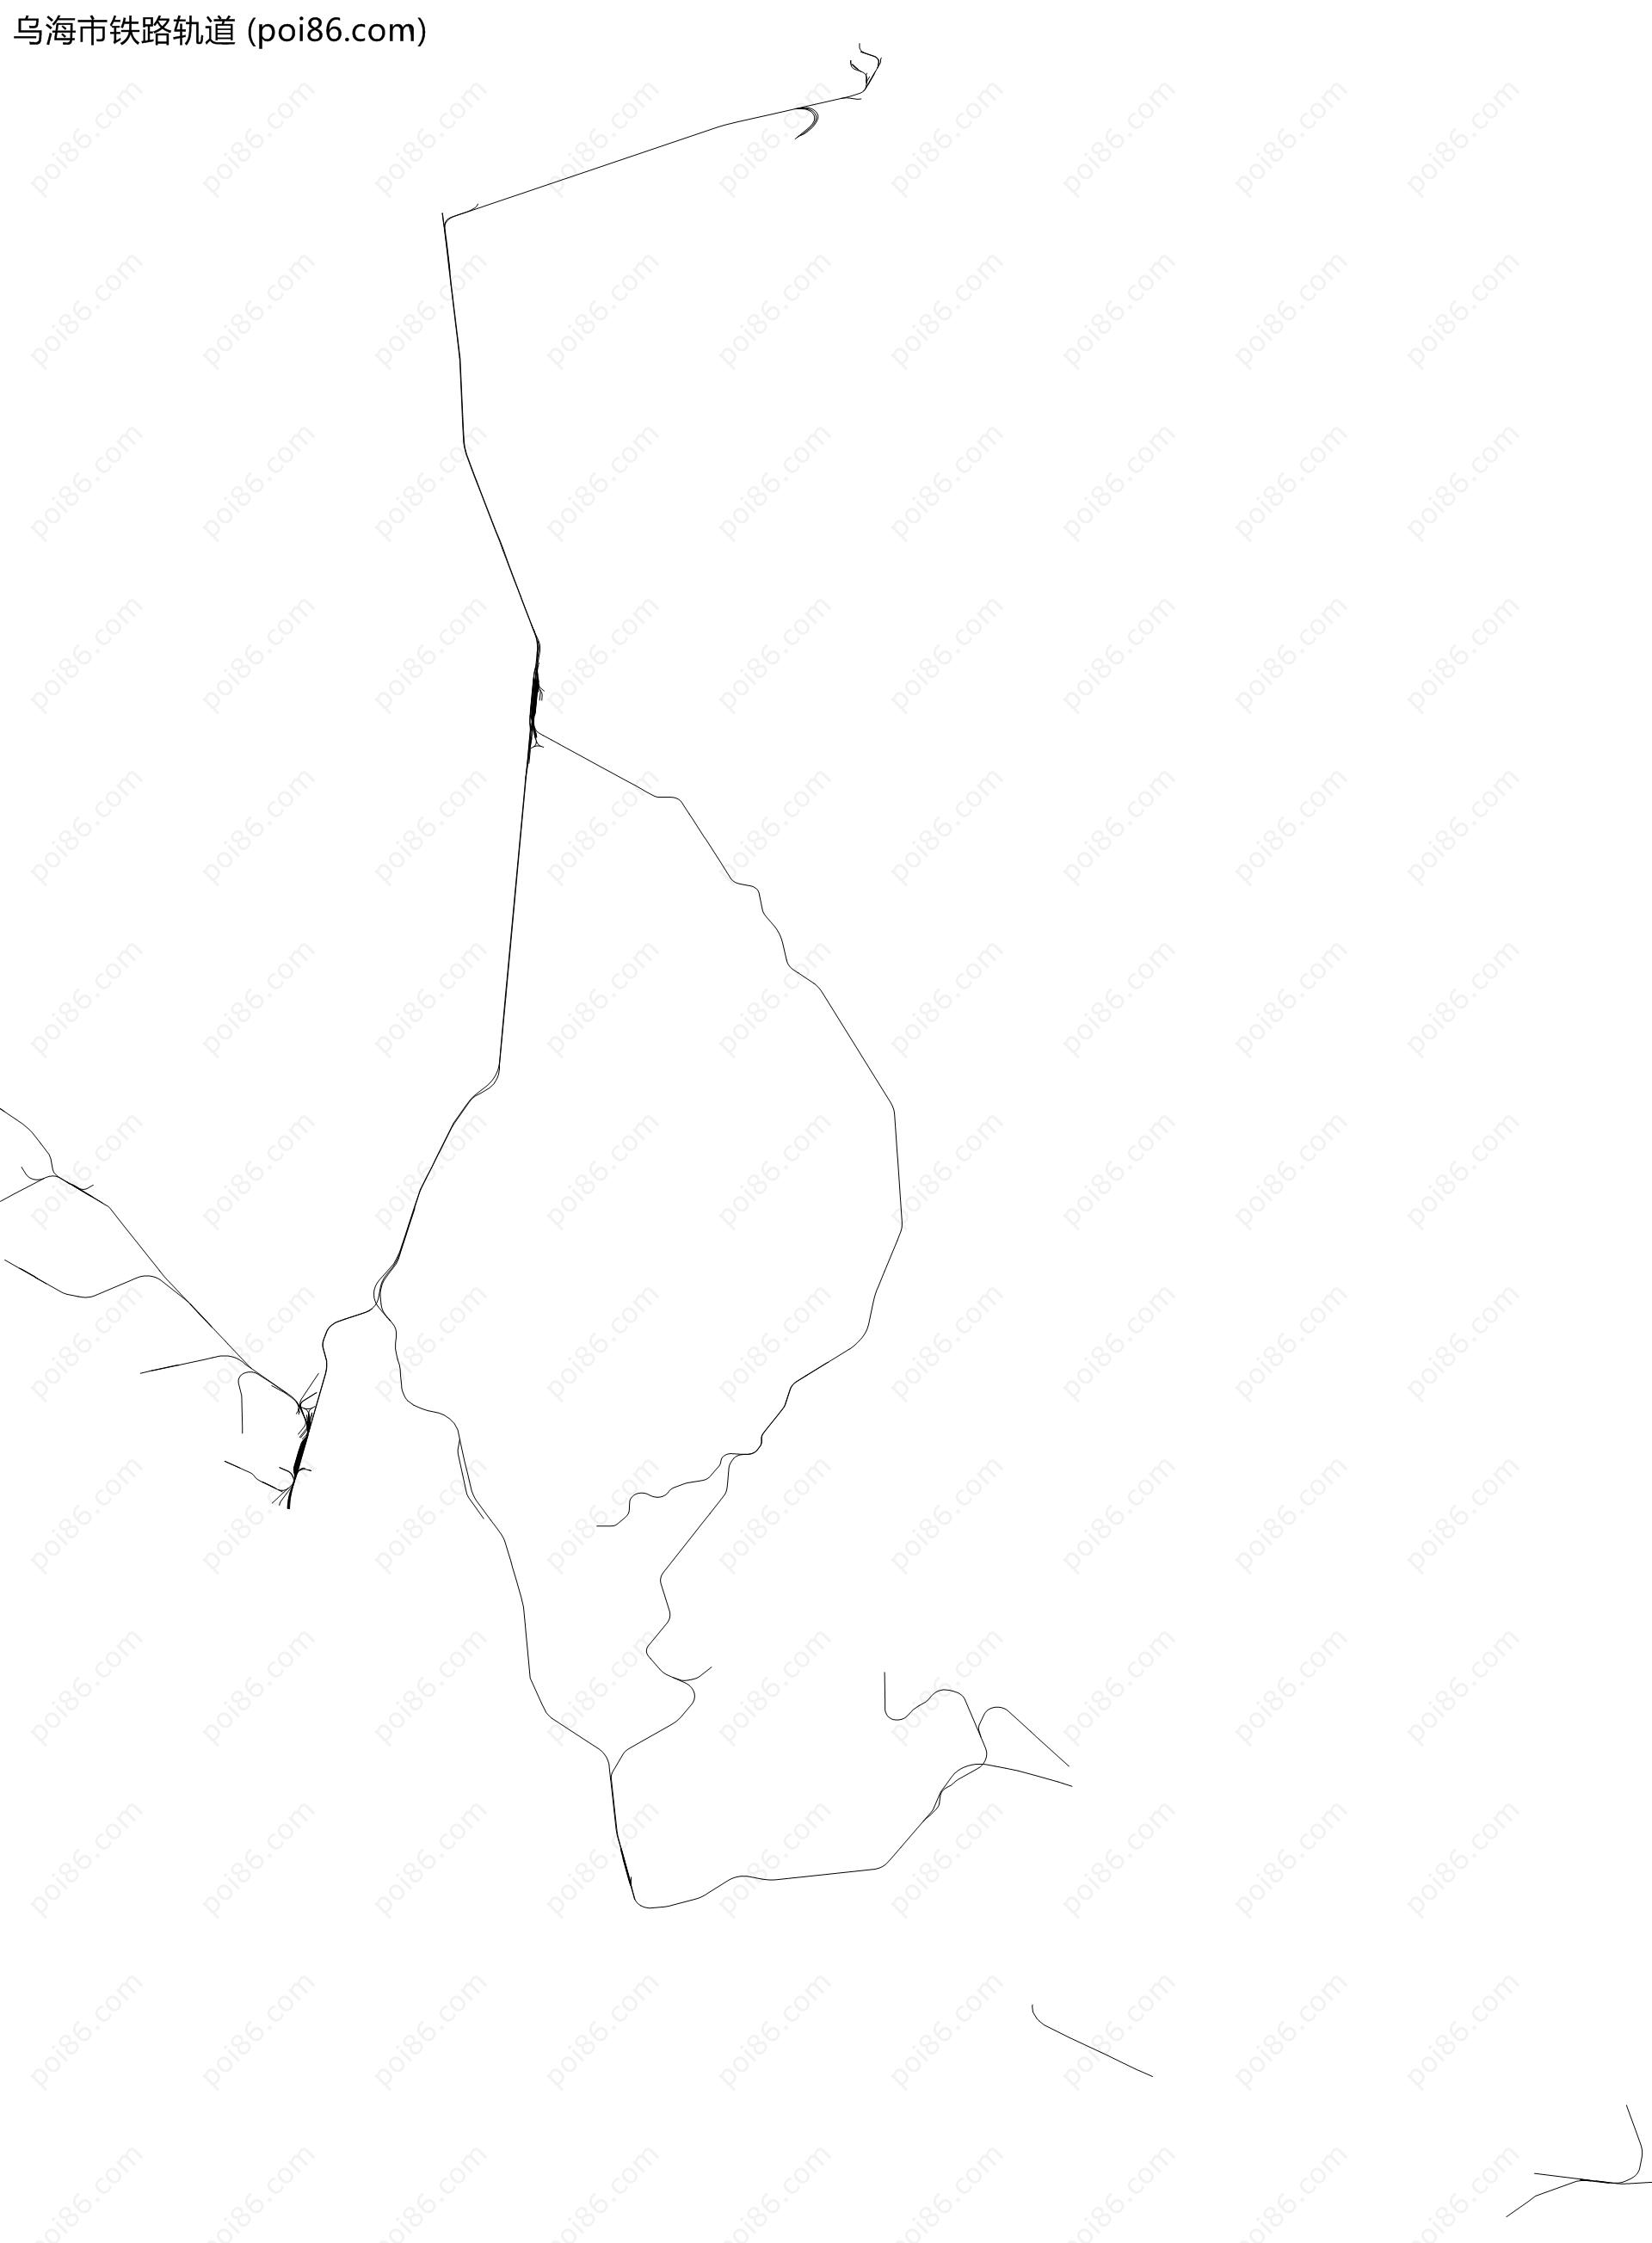 乌海市铁路轨道地图